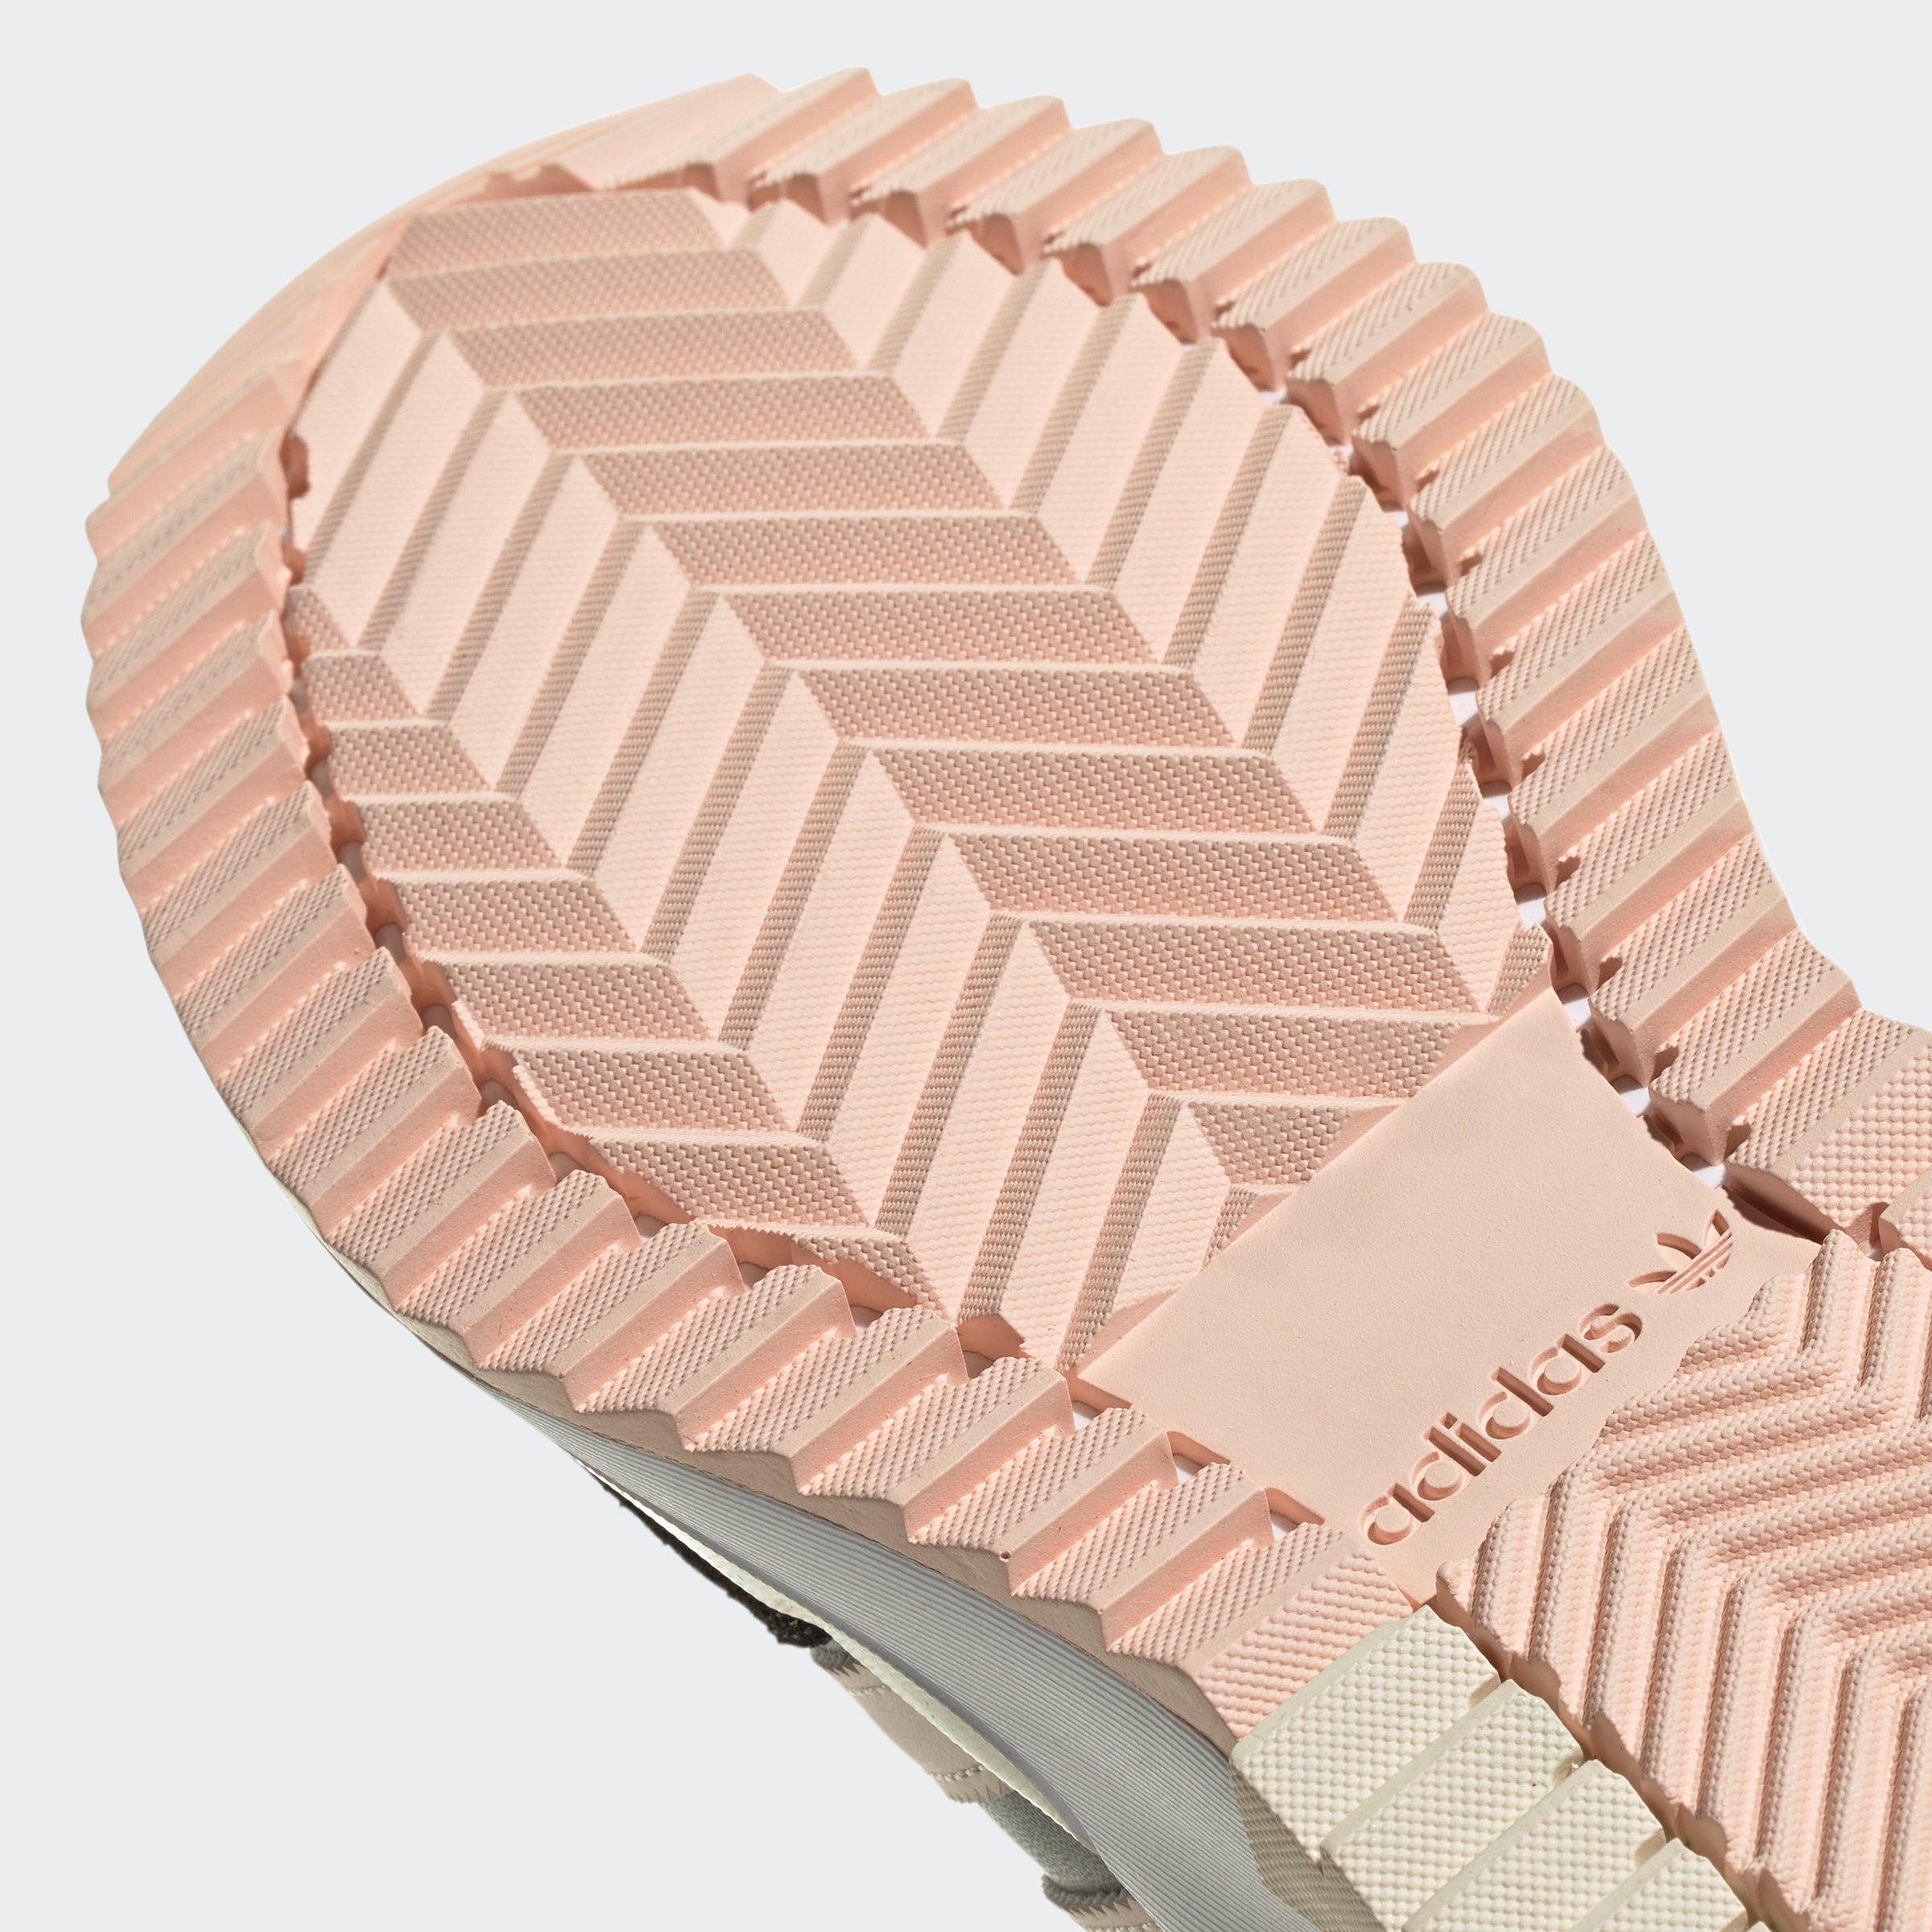 Five Wonder Originals / / Carbon Sneaker F2 RETROPY adidas Quartz Grey